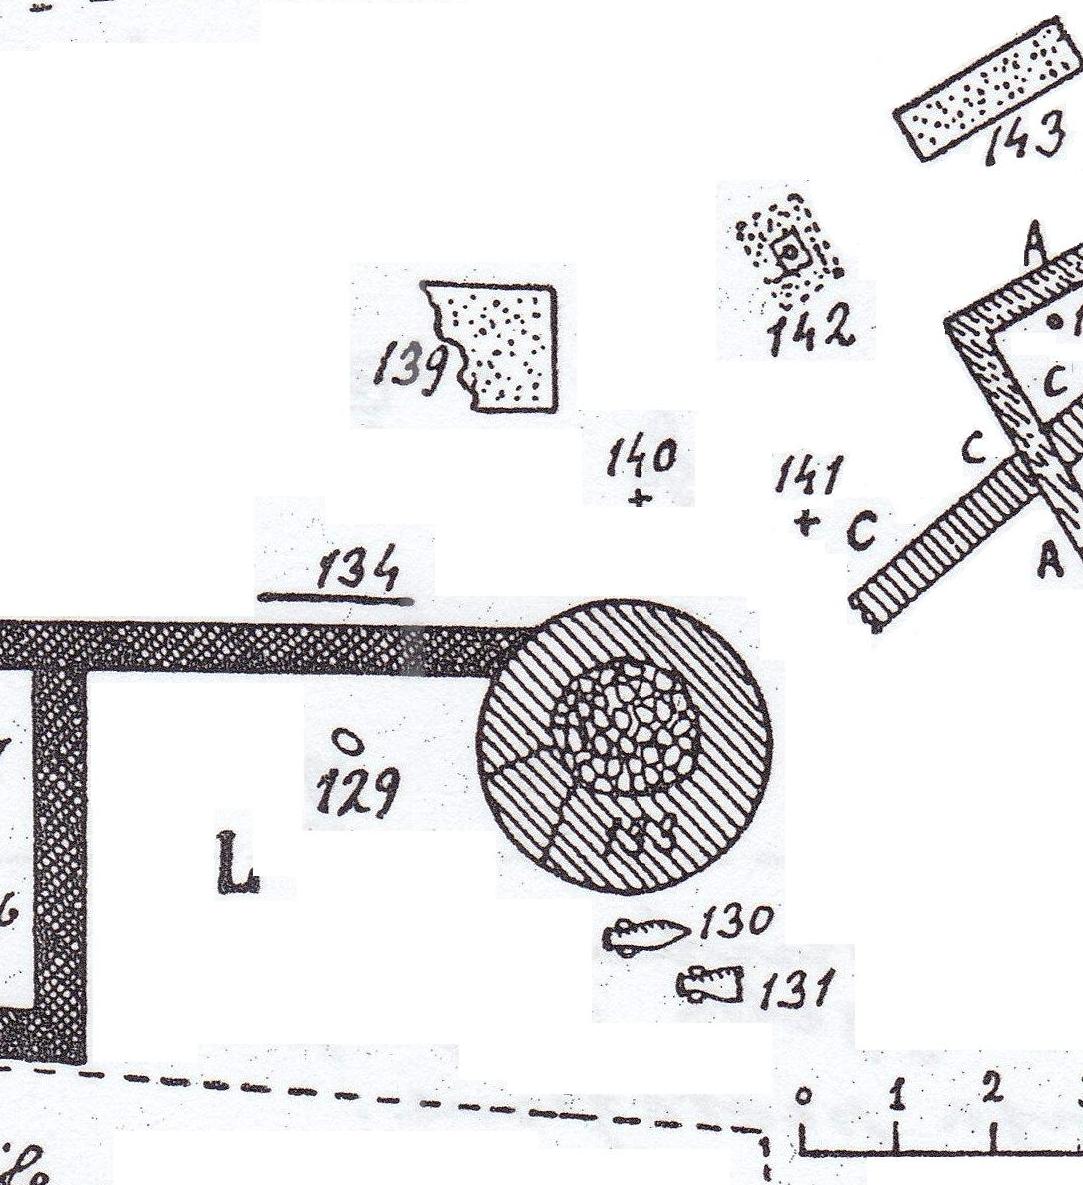 Necropoli di Albintimilium, recinto L, tomba 129 (tomba a incinerazione, area ad uso funerario) - Ventimiglia (IM)  (fine/ inizio Età romana imperiale)